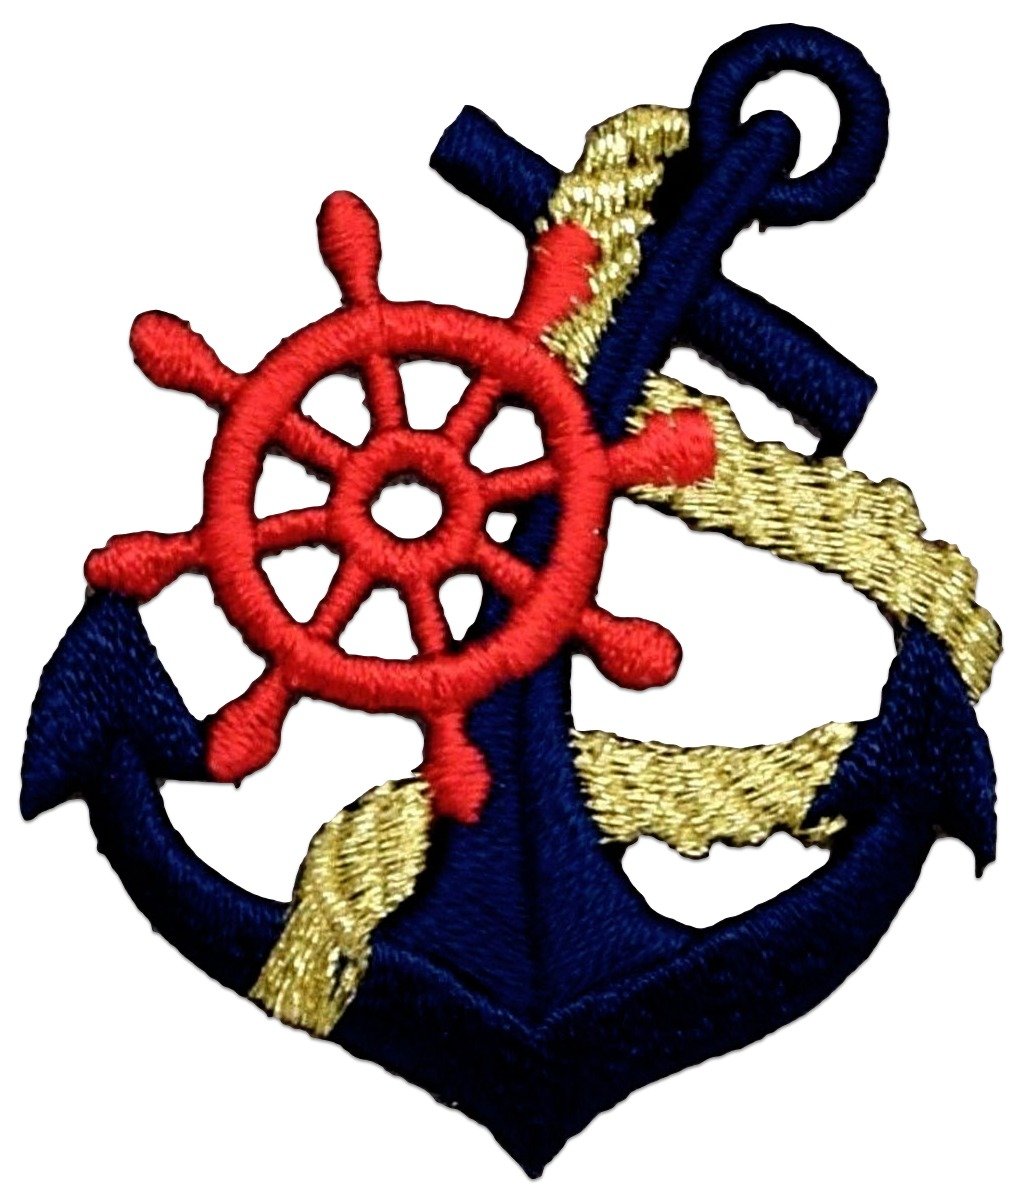 clipart anchor seaman